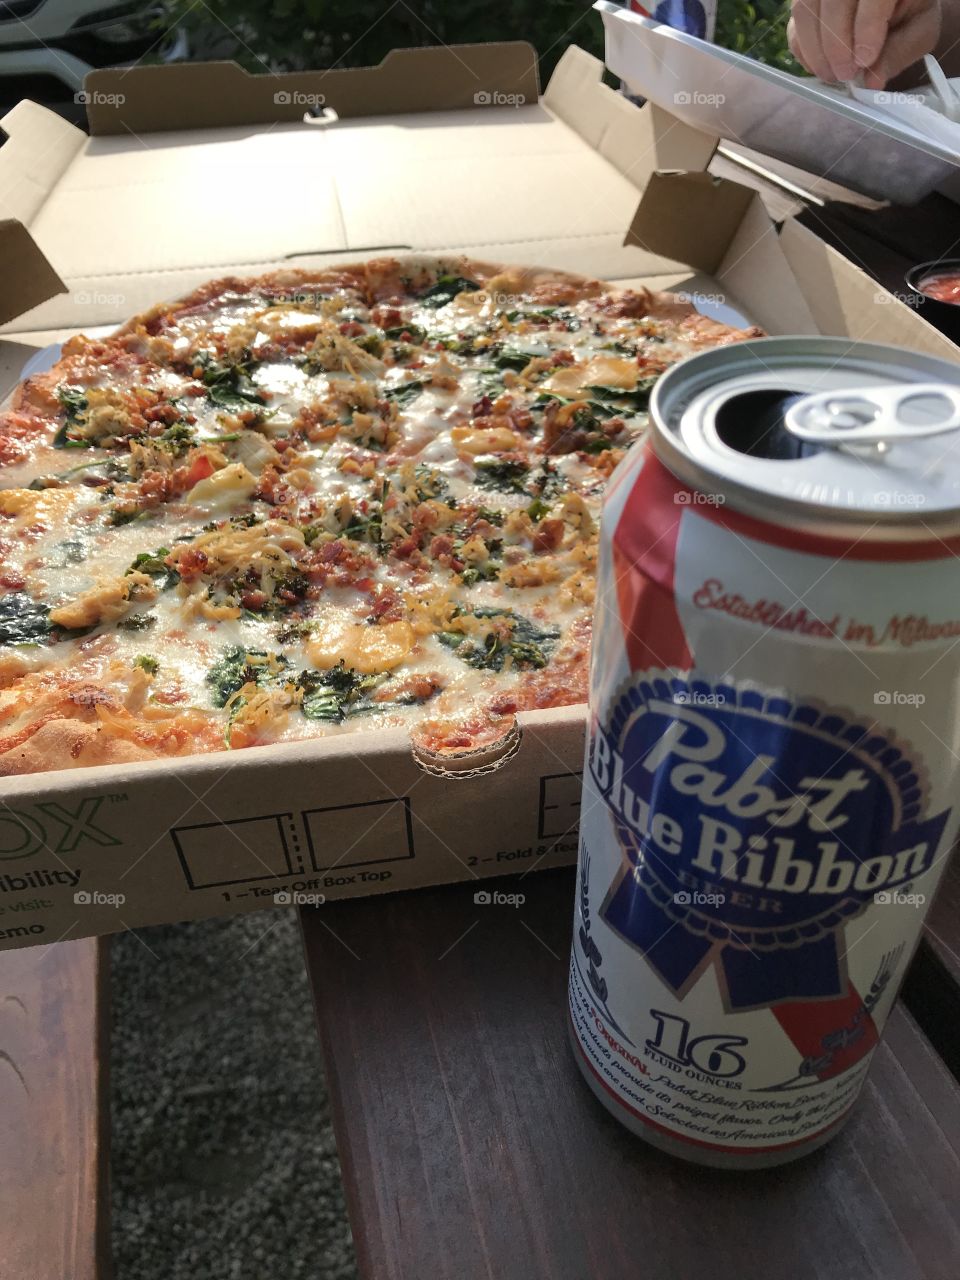 Beer and pizza in door county 